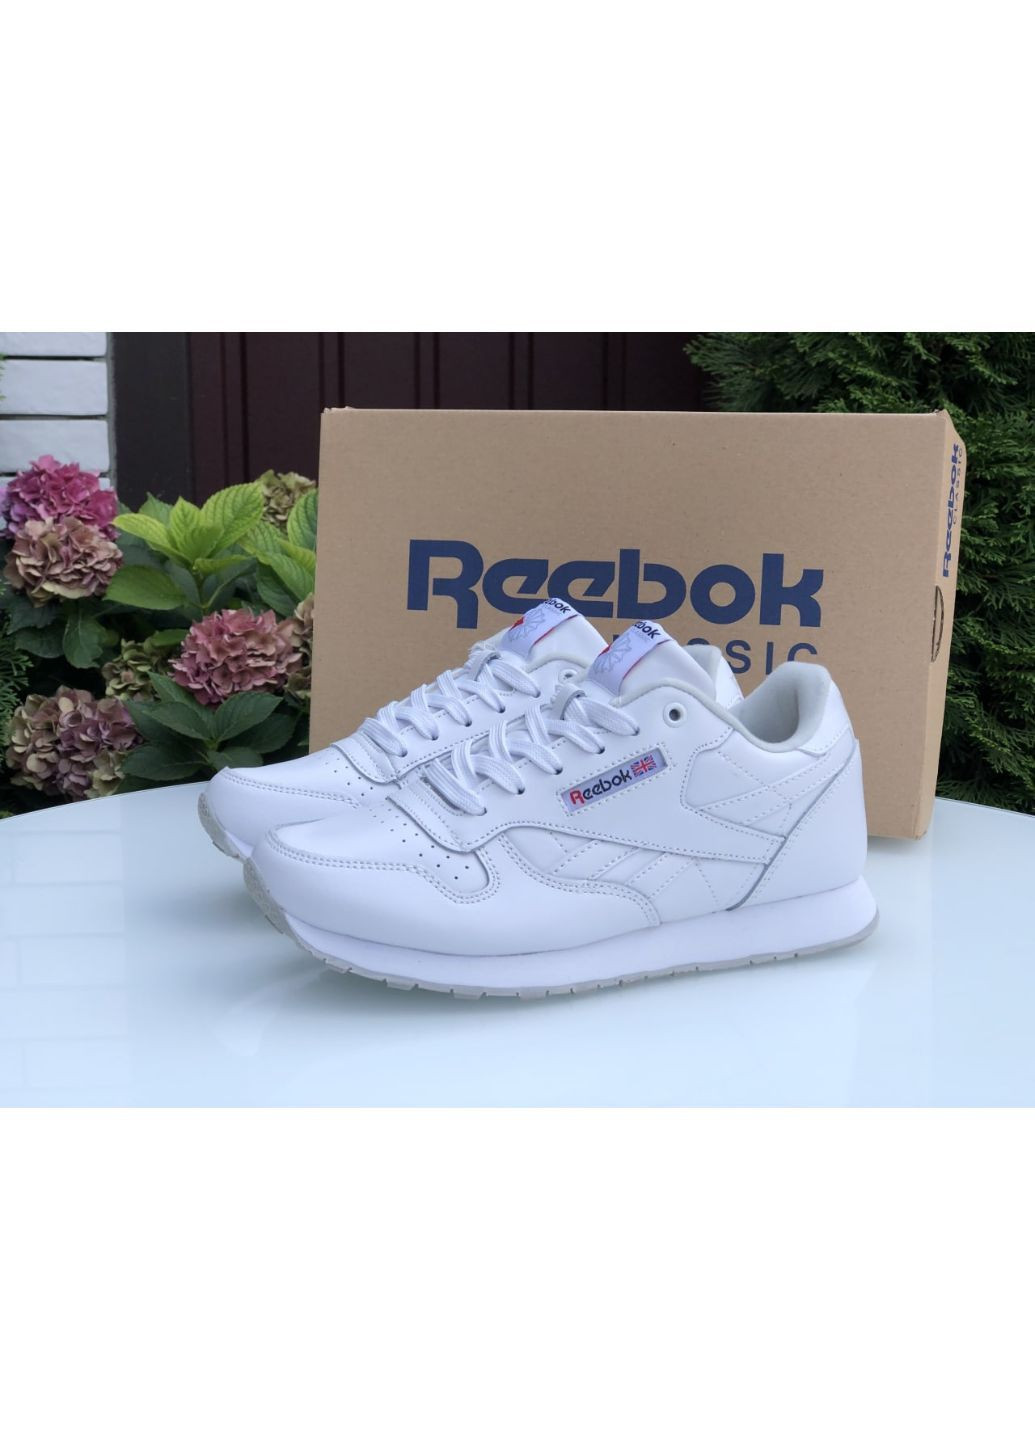 Белые демисезонные женские кроссовки белые «no name» Reebok Classic